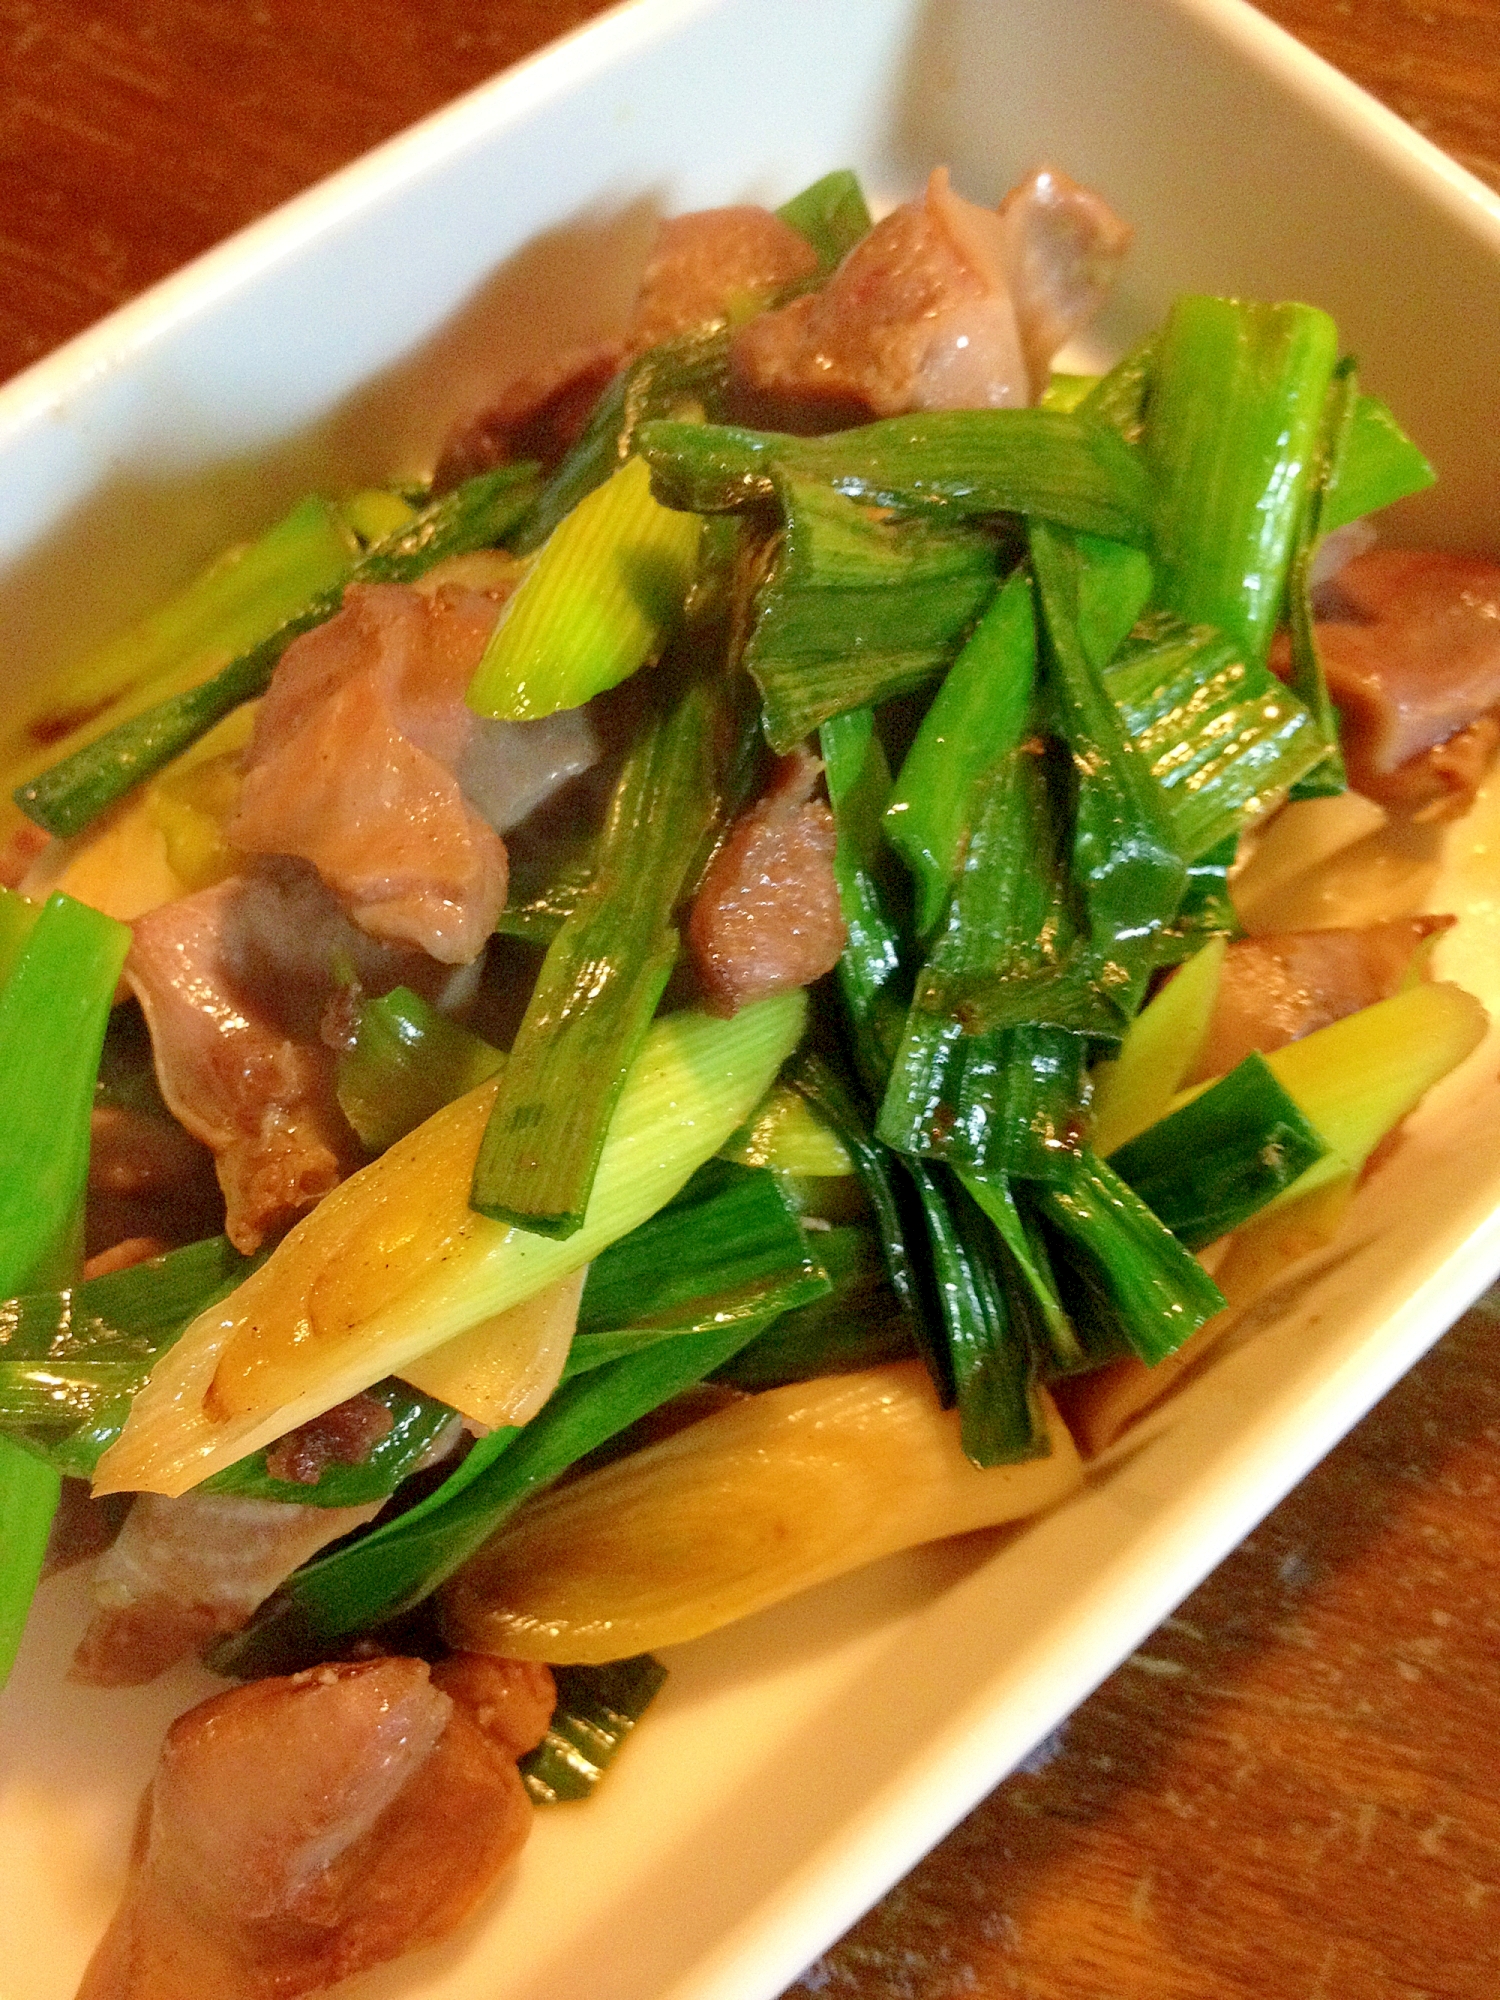 中華以外も 葉ニンニク をおいしく食べるレシピ10選 Macaroni